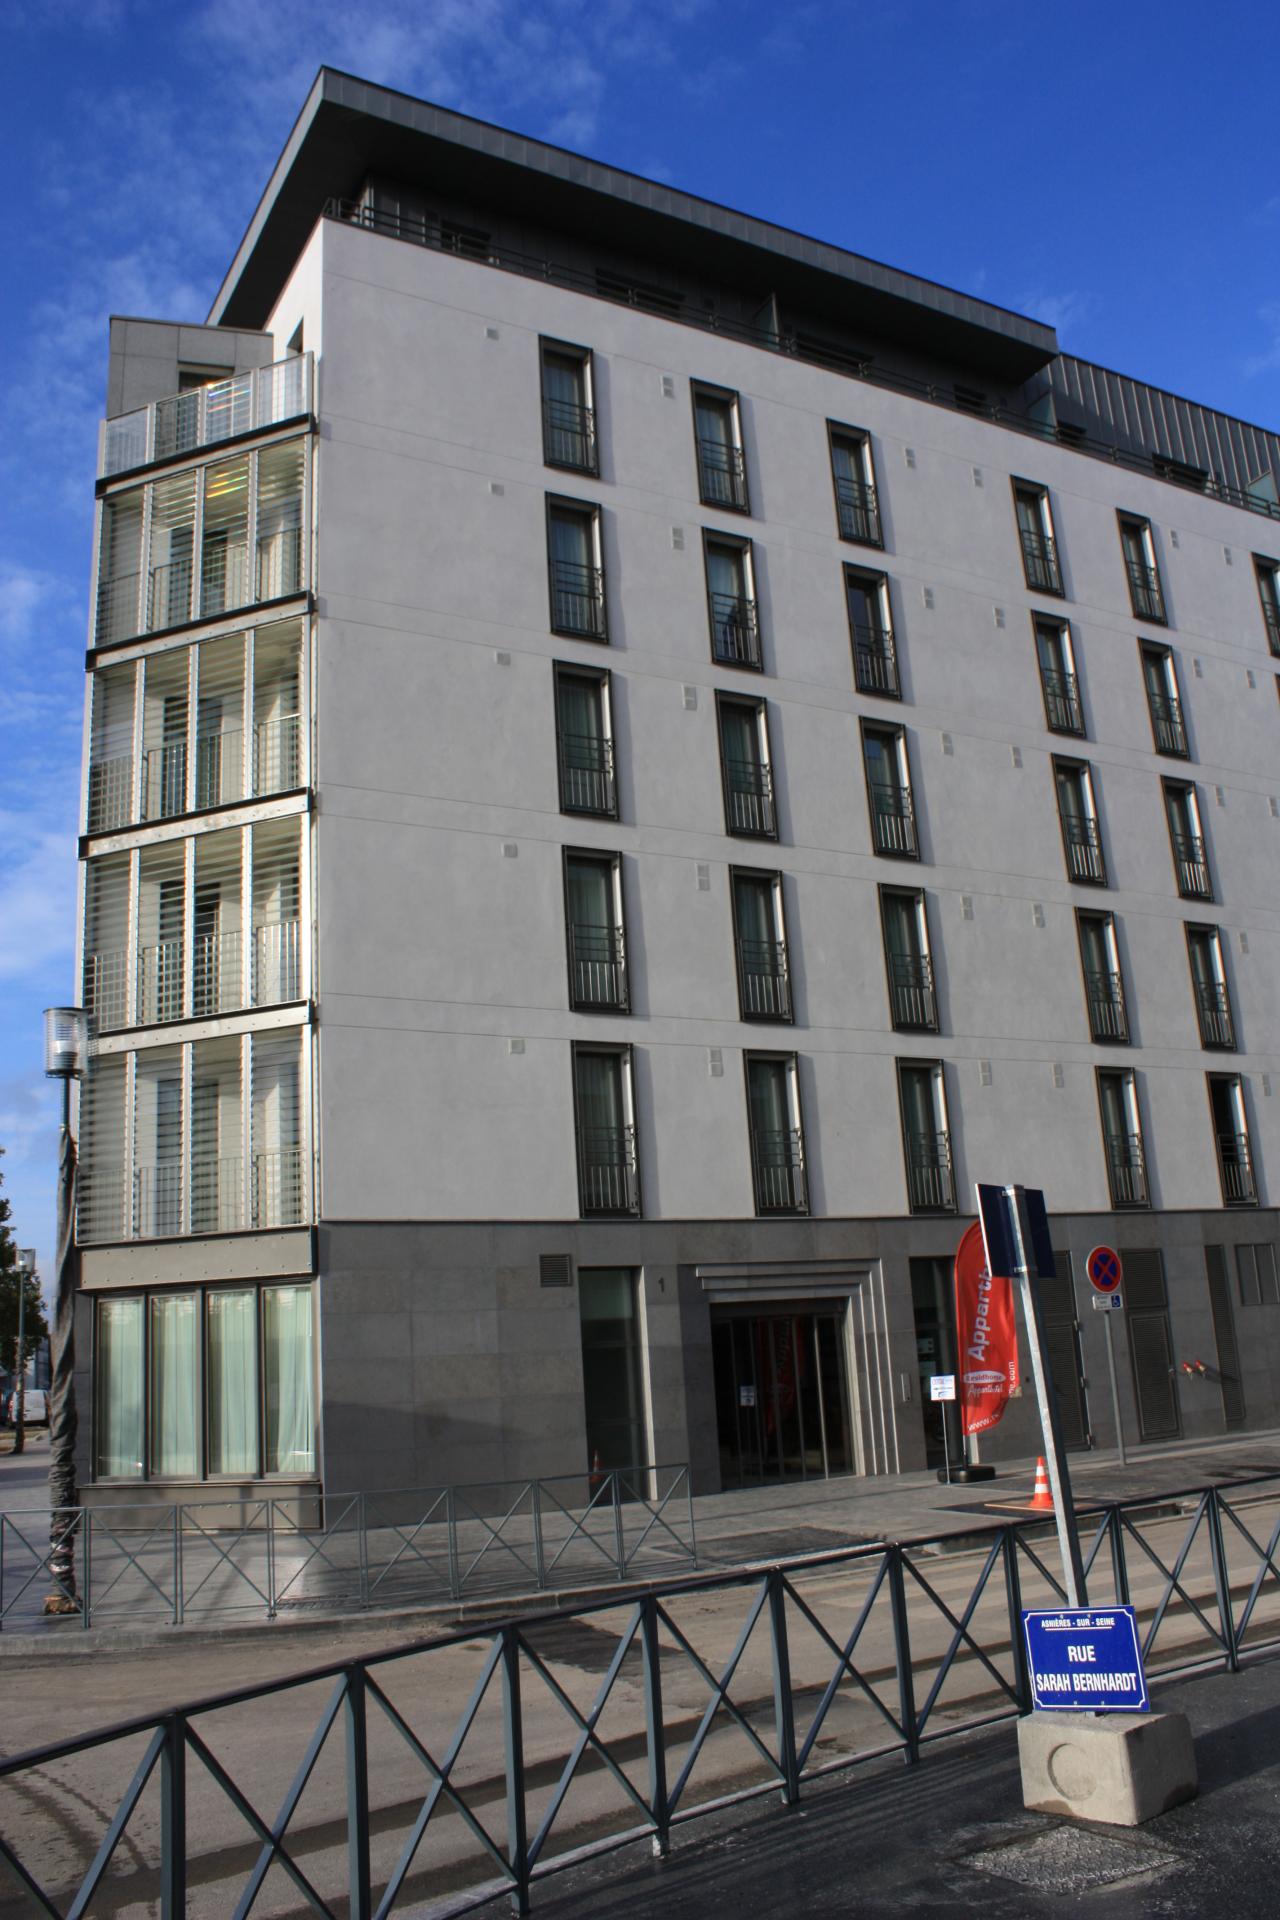 Vente appartement T2 30m2 - Résidence de tourisme classée 3 étoiles à Asnières-sur-Seine